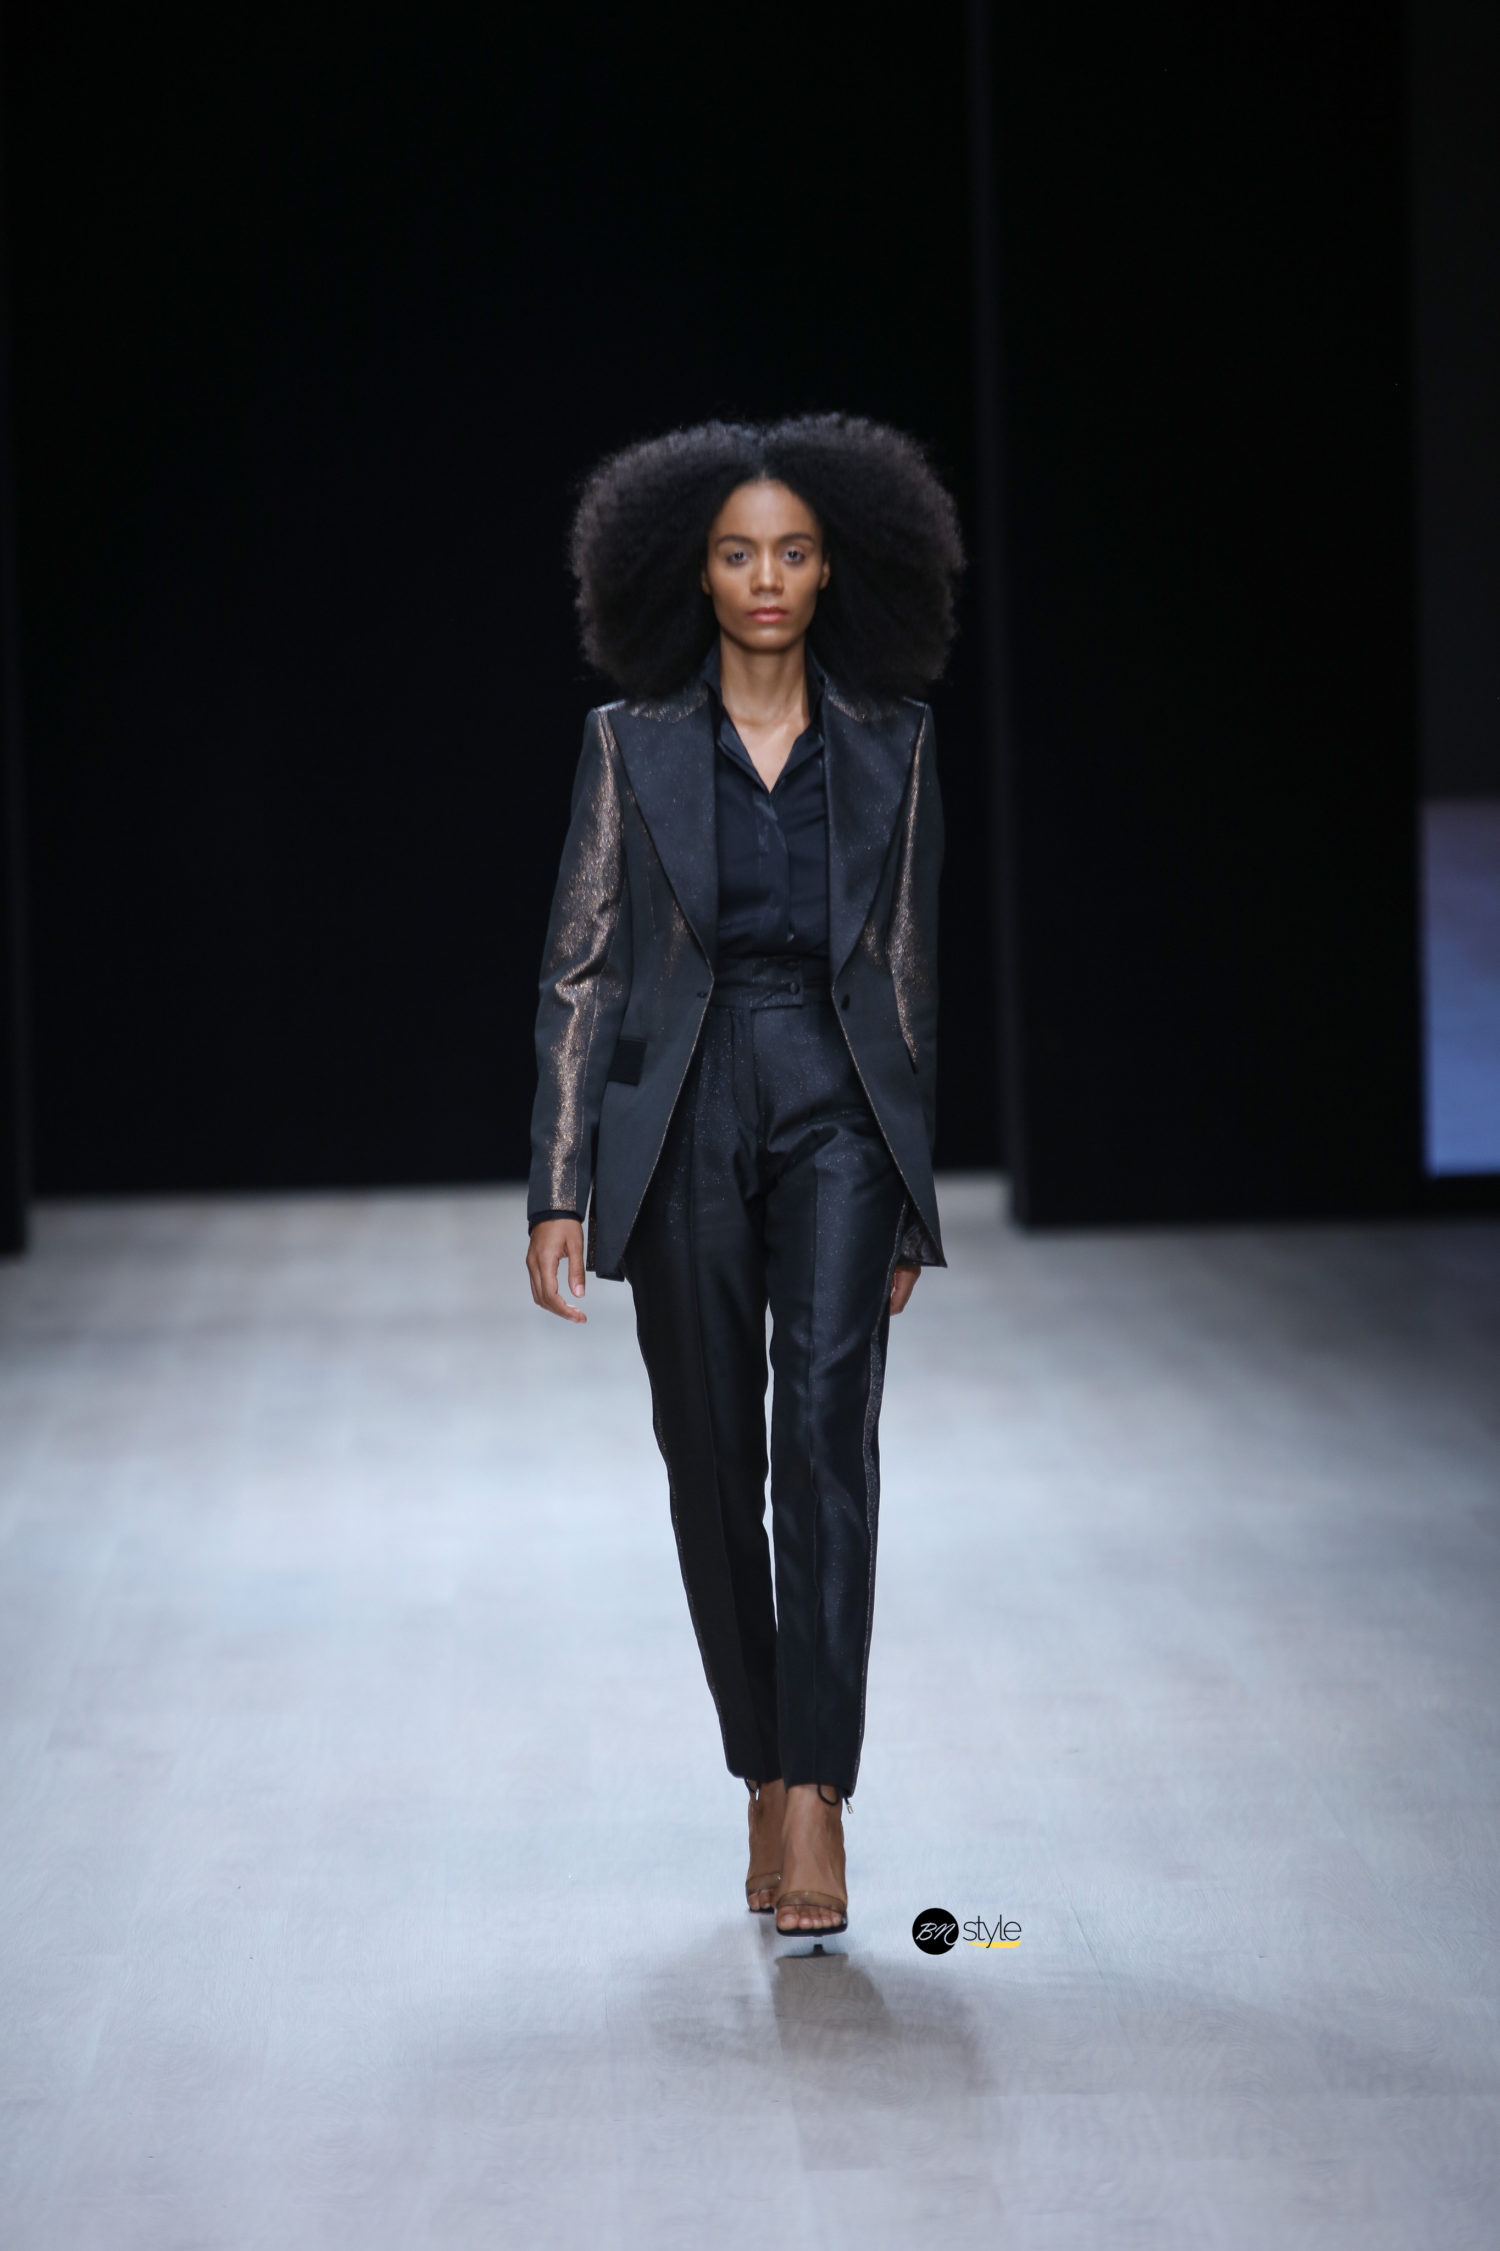 ARISE Fashion Week 2019 | Mai Atafo | BN Style